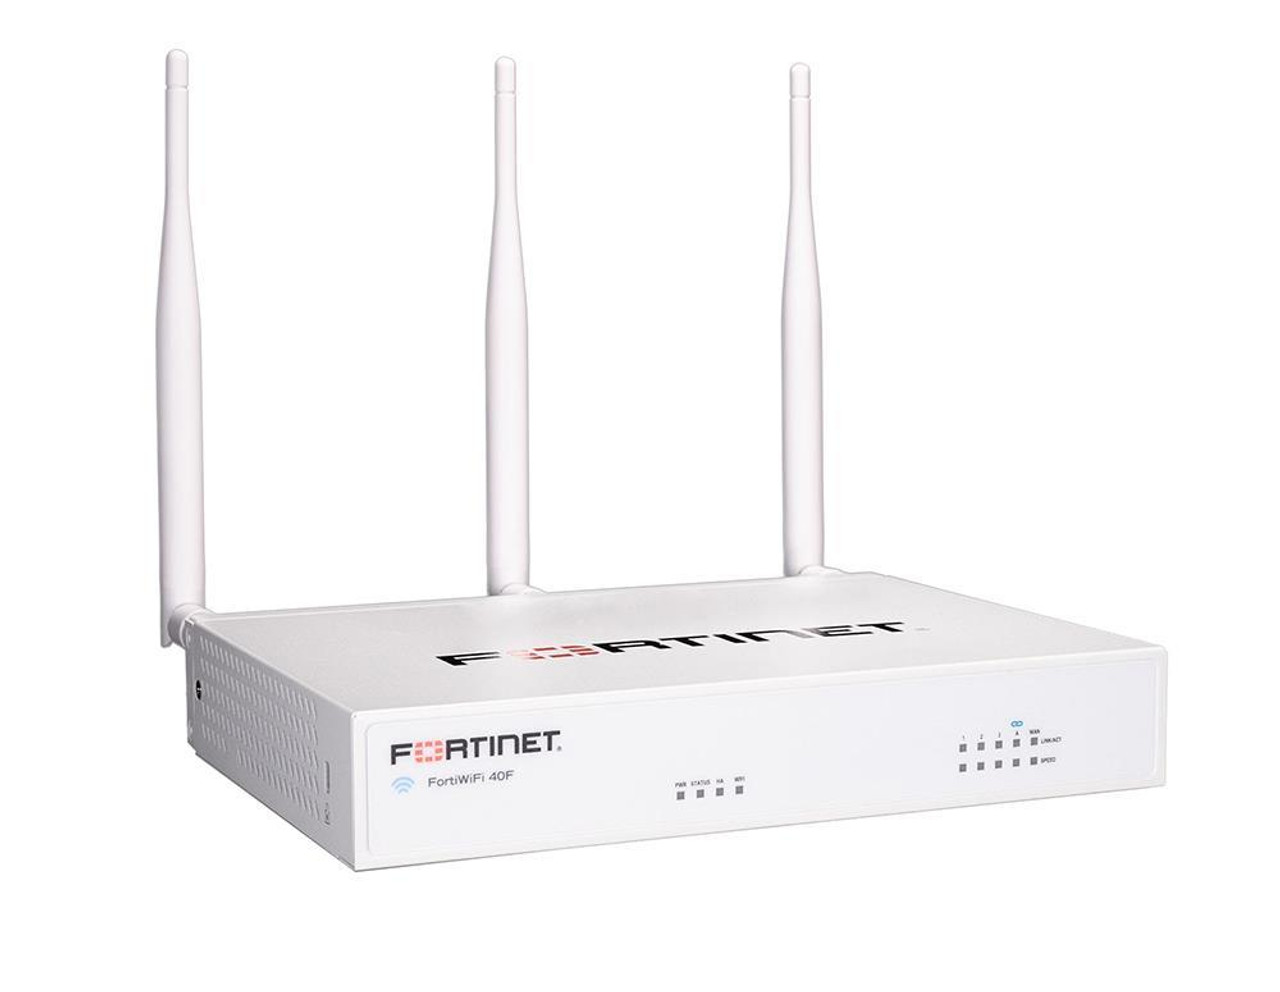 Fortinet FortiWifi FWF-40F Network Security/Firewall Appliance - 5 Port - 10/100/1000Base-T - Gigabit Ethernet - Wireless LAN IEEE 802.11